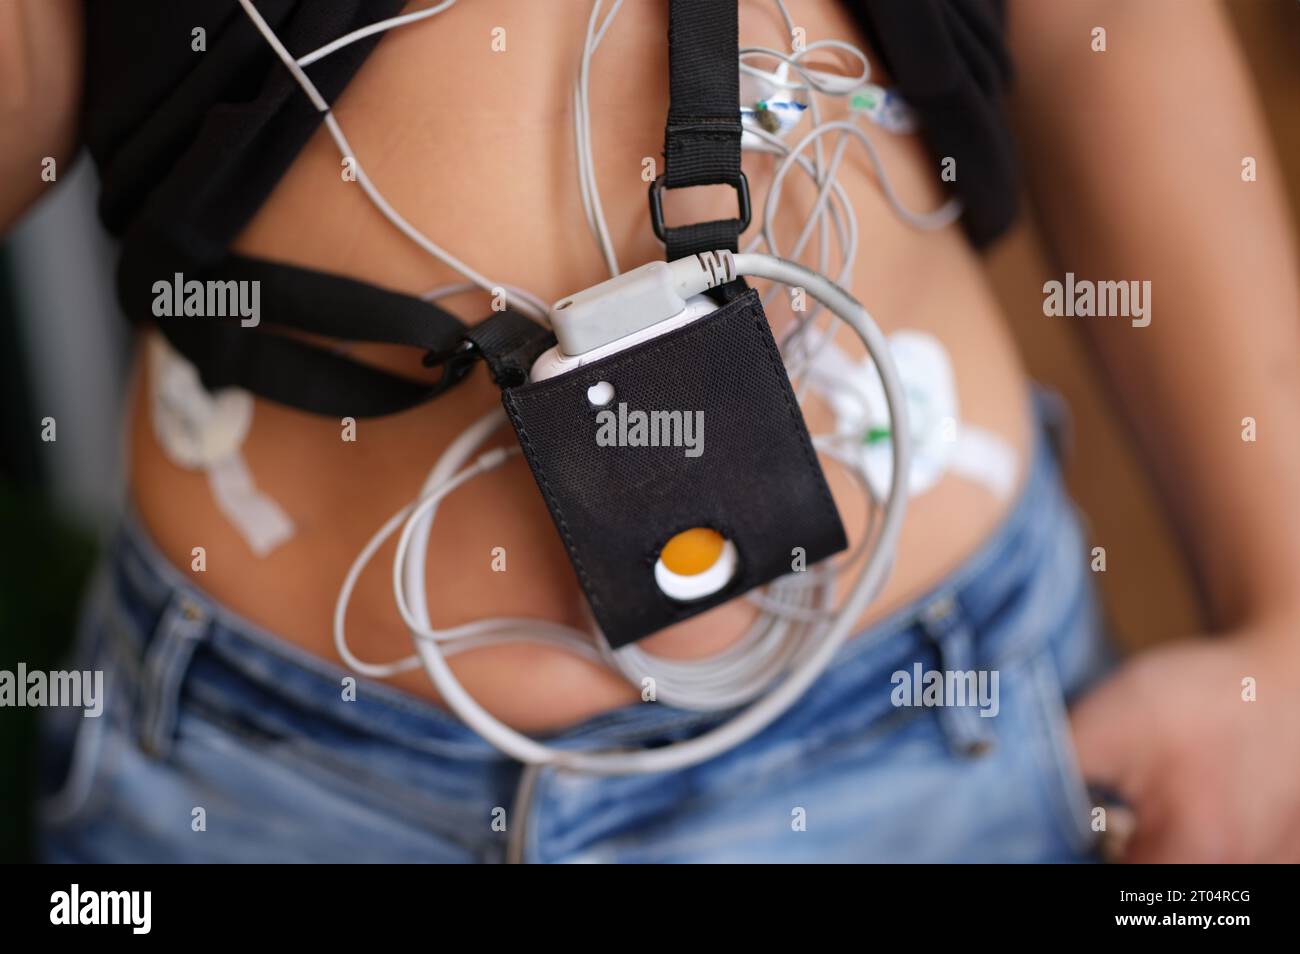 Der EKG-holter-Monitor hängt in Nahaufnahme am Körper des Patienten Stockfoto